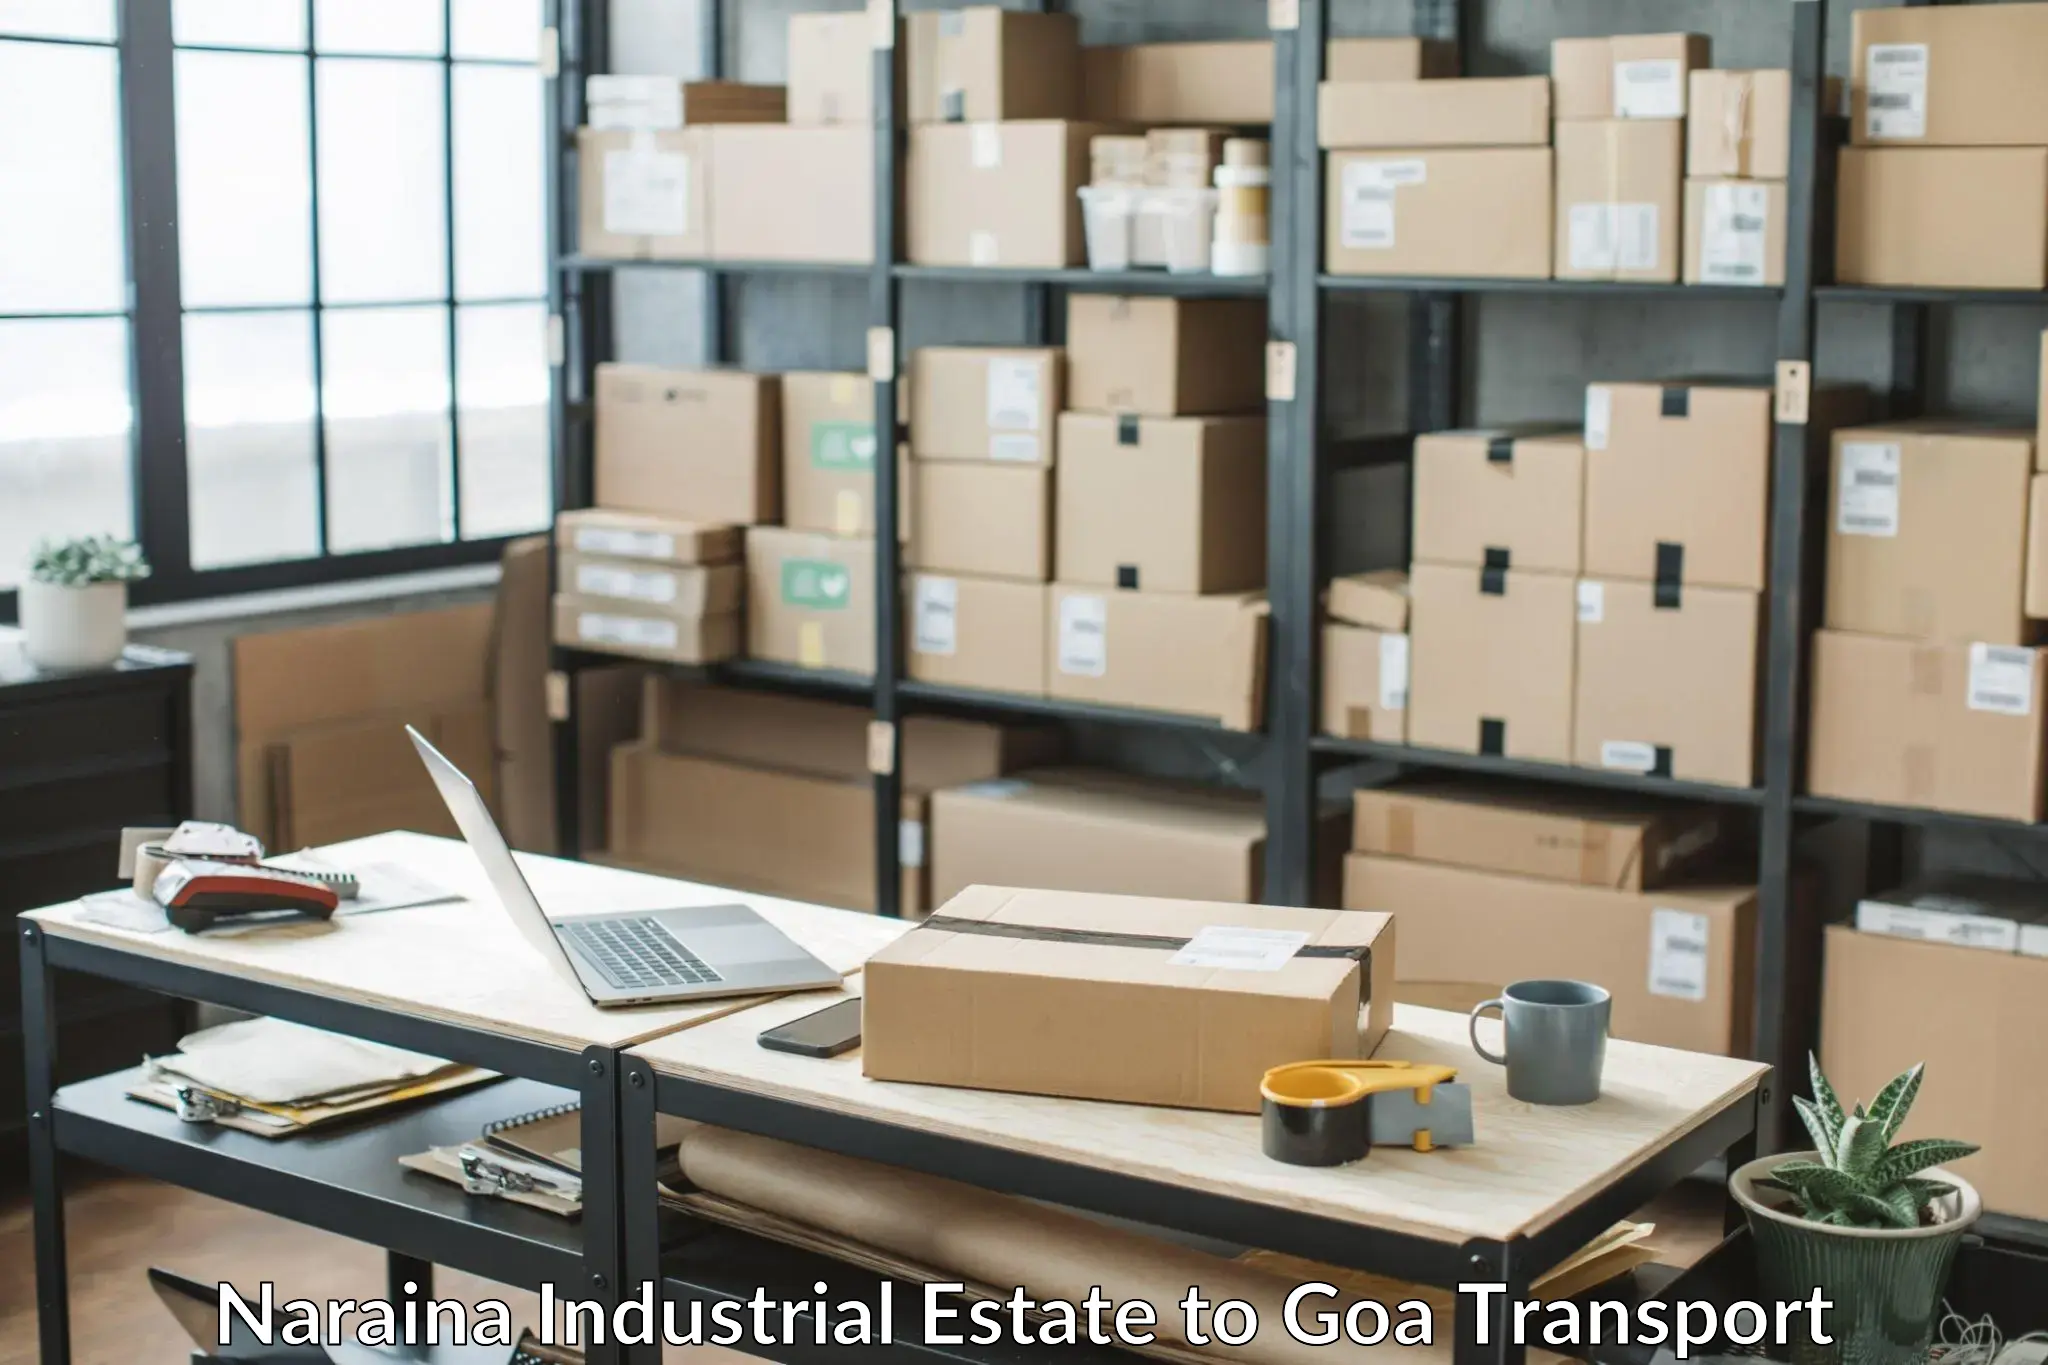 Furniture transport service Naraina Industrial Estate to Goa